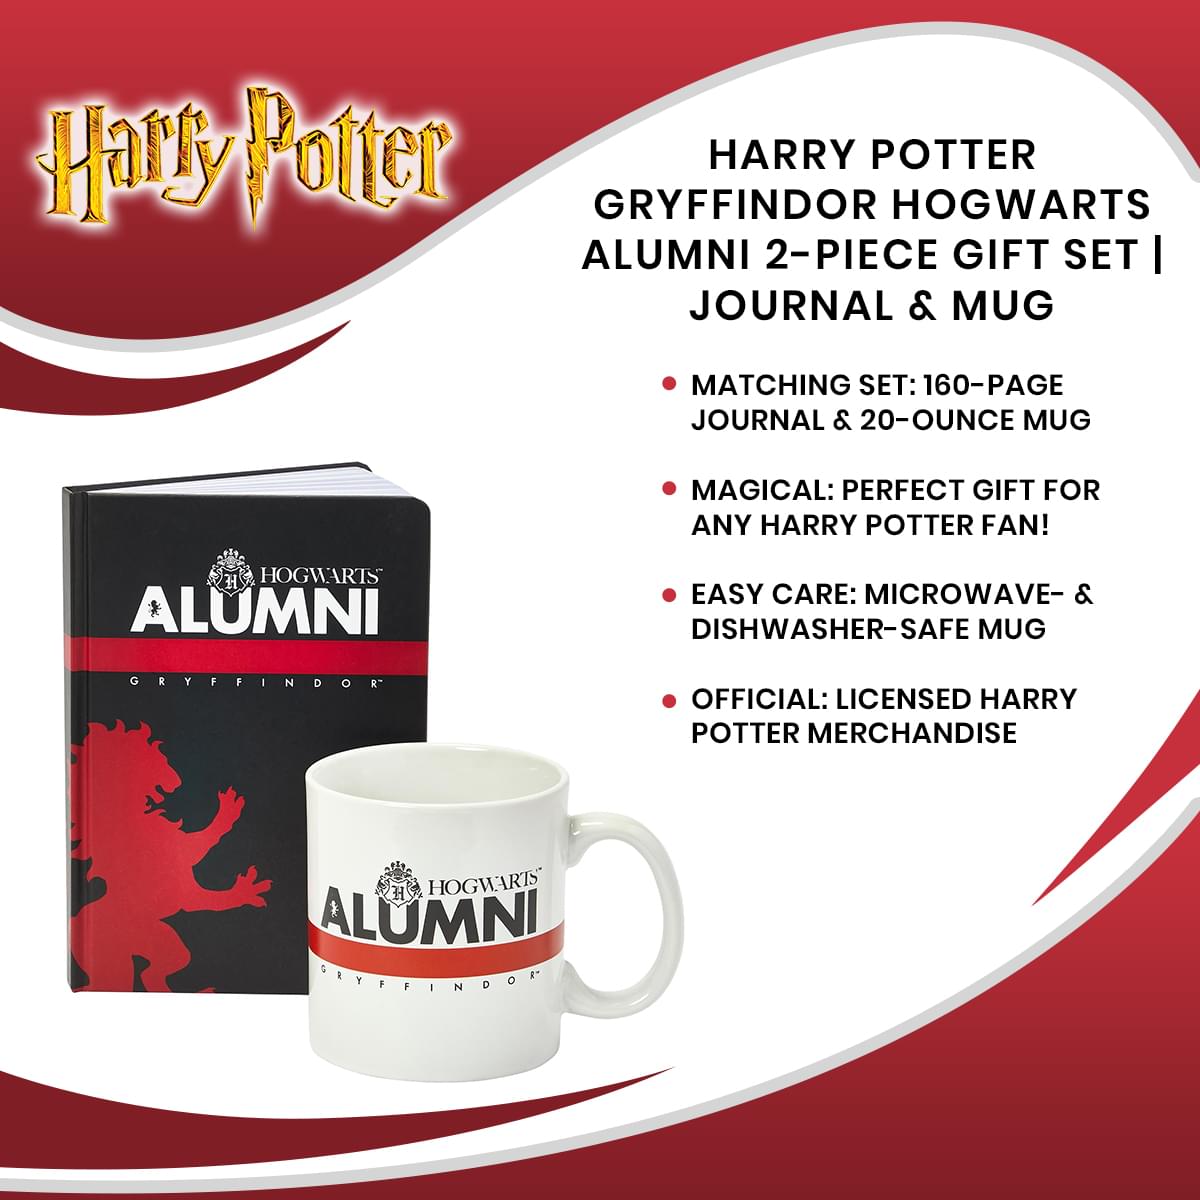 Harry Potter Gryffindor Hogwarts Alumni 2-Piece Gift Set | Journal & Mug